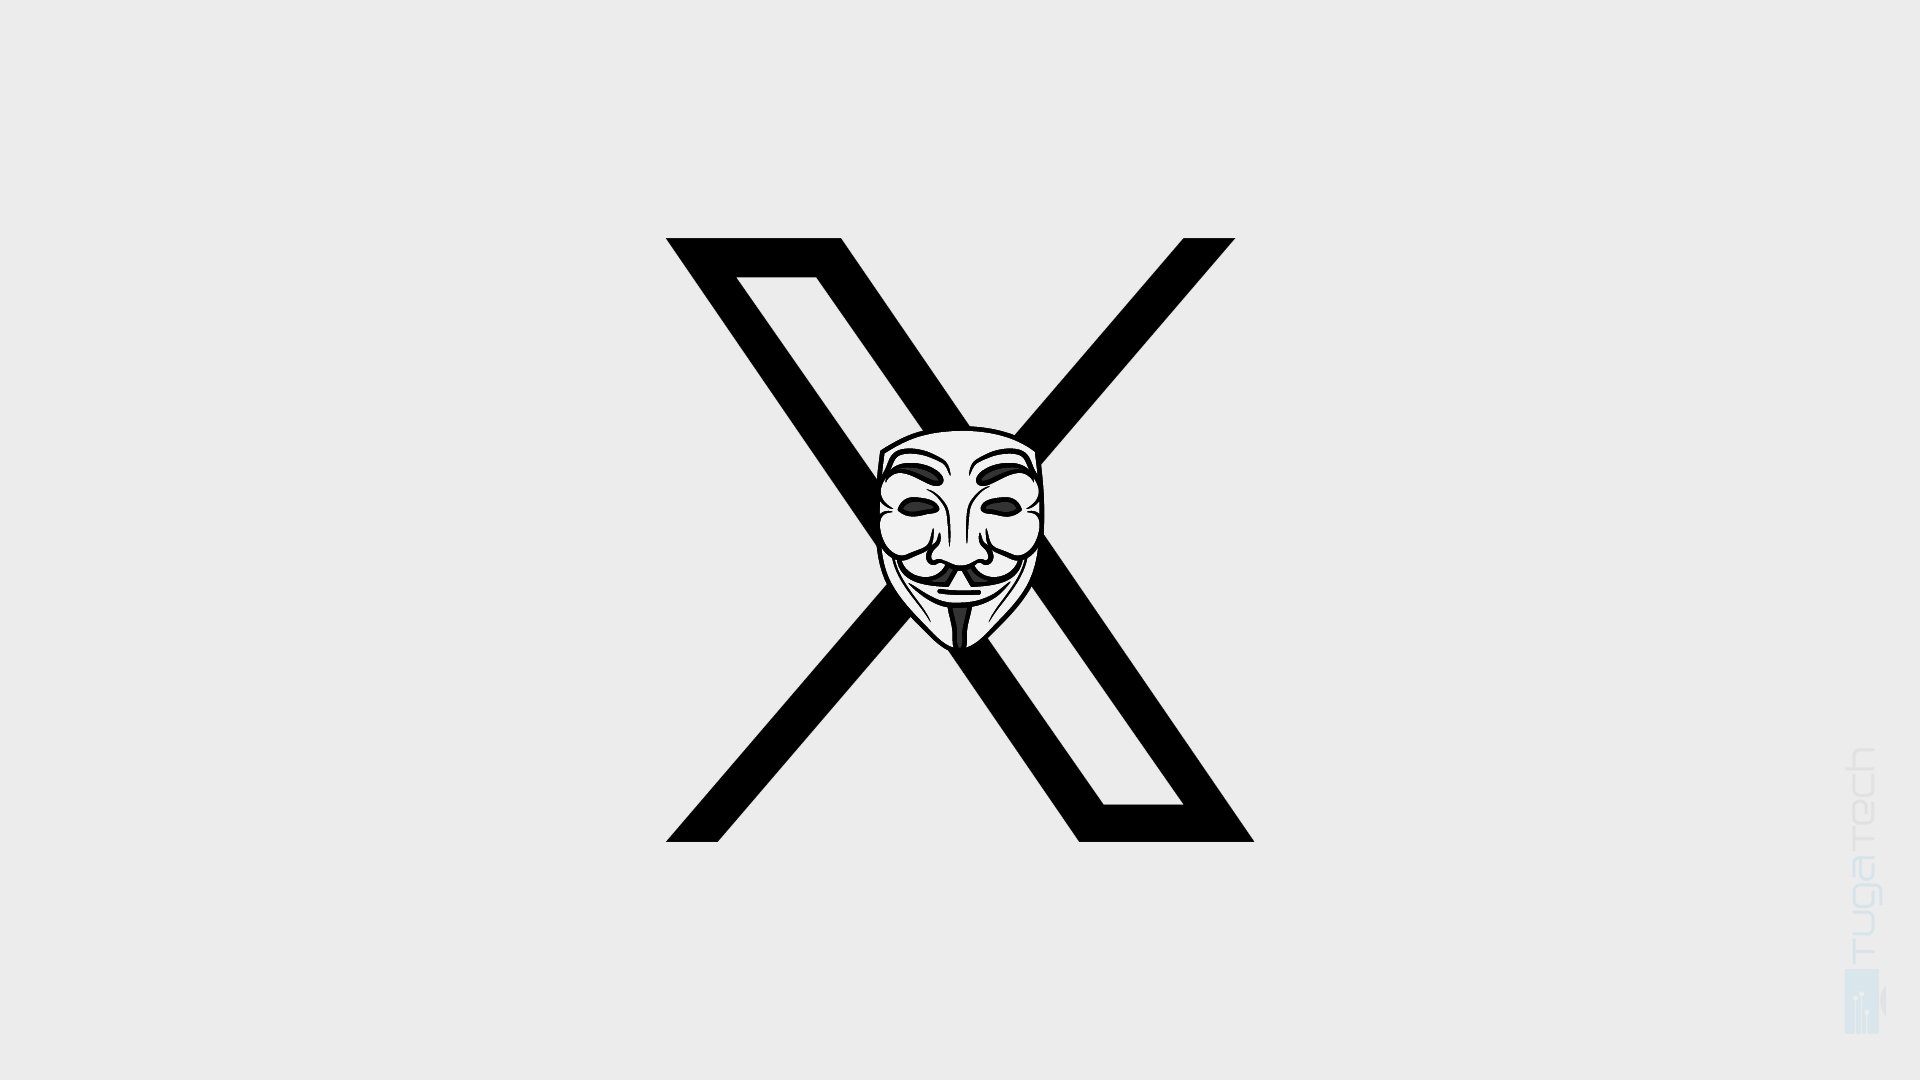 Logo da X com hacker